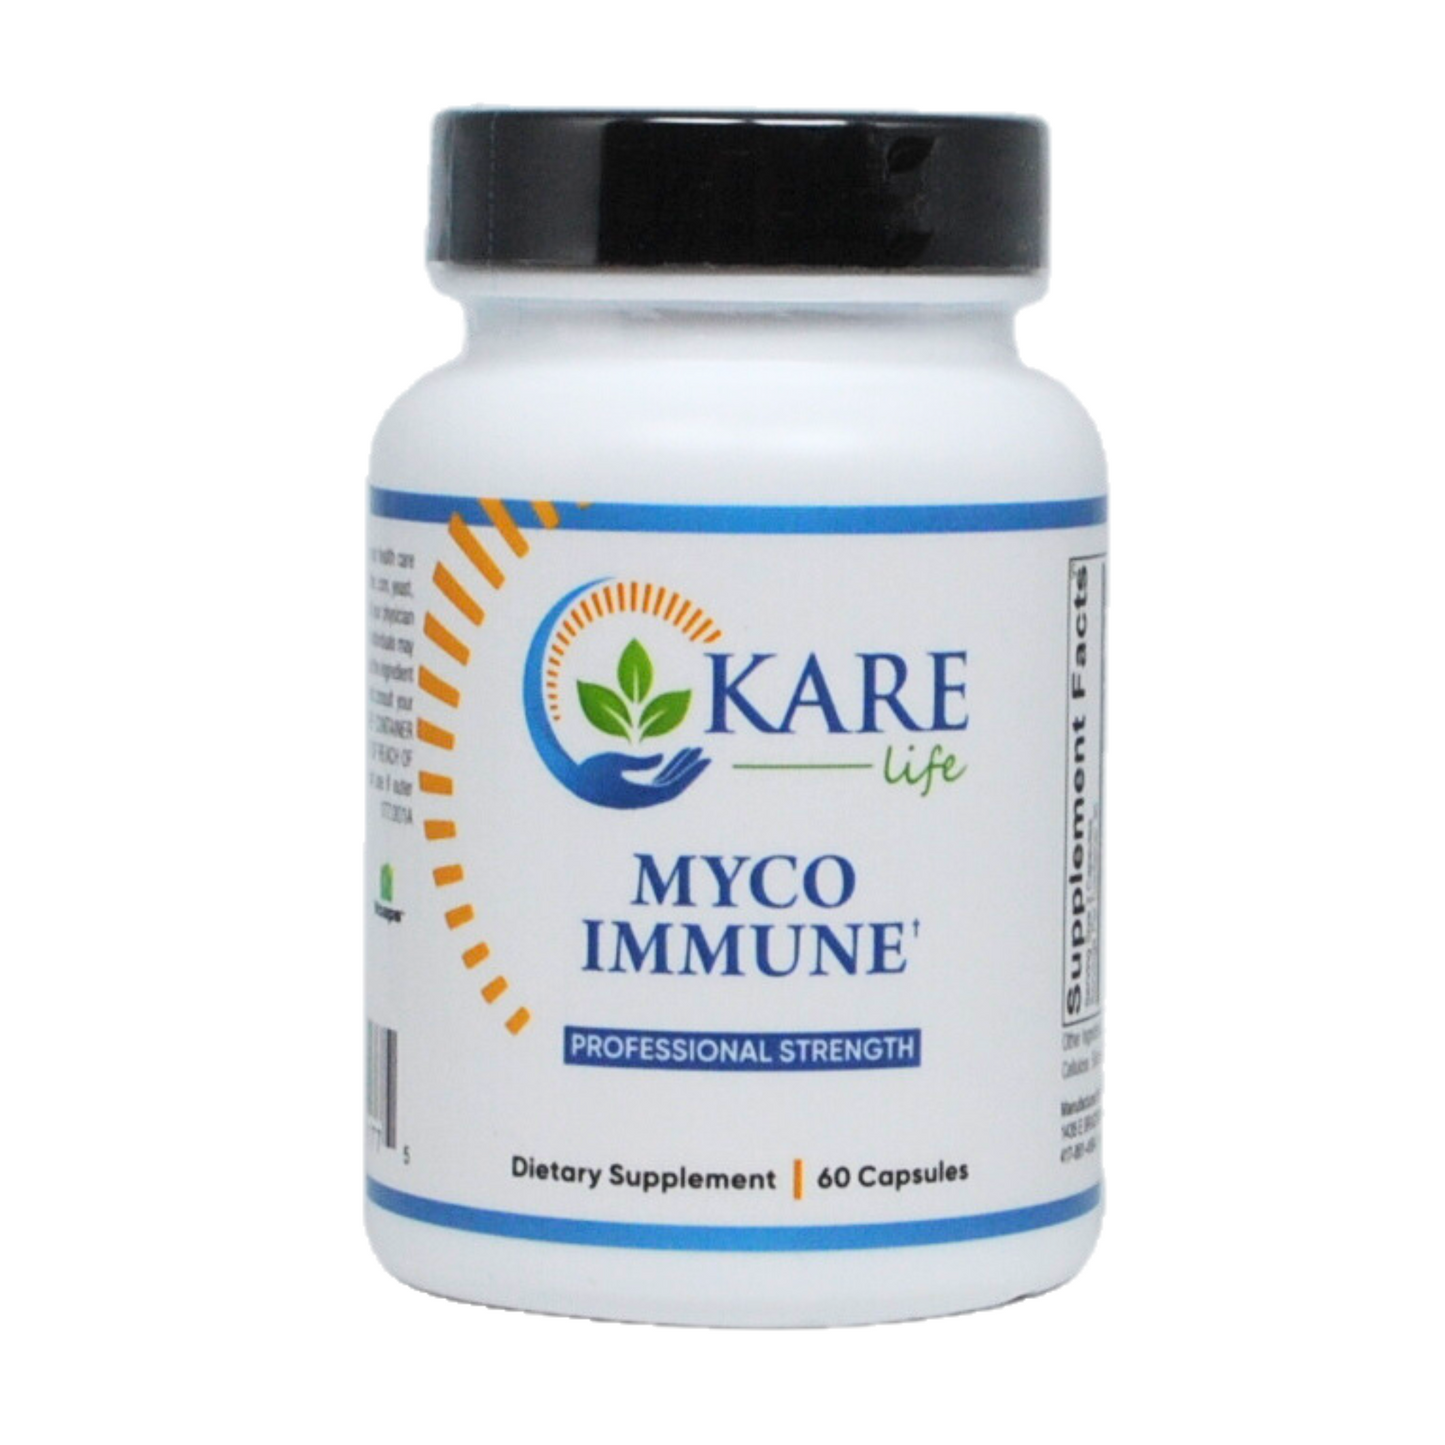 Myco Immune